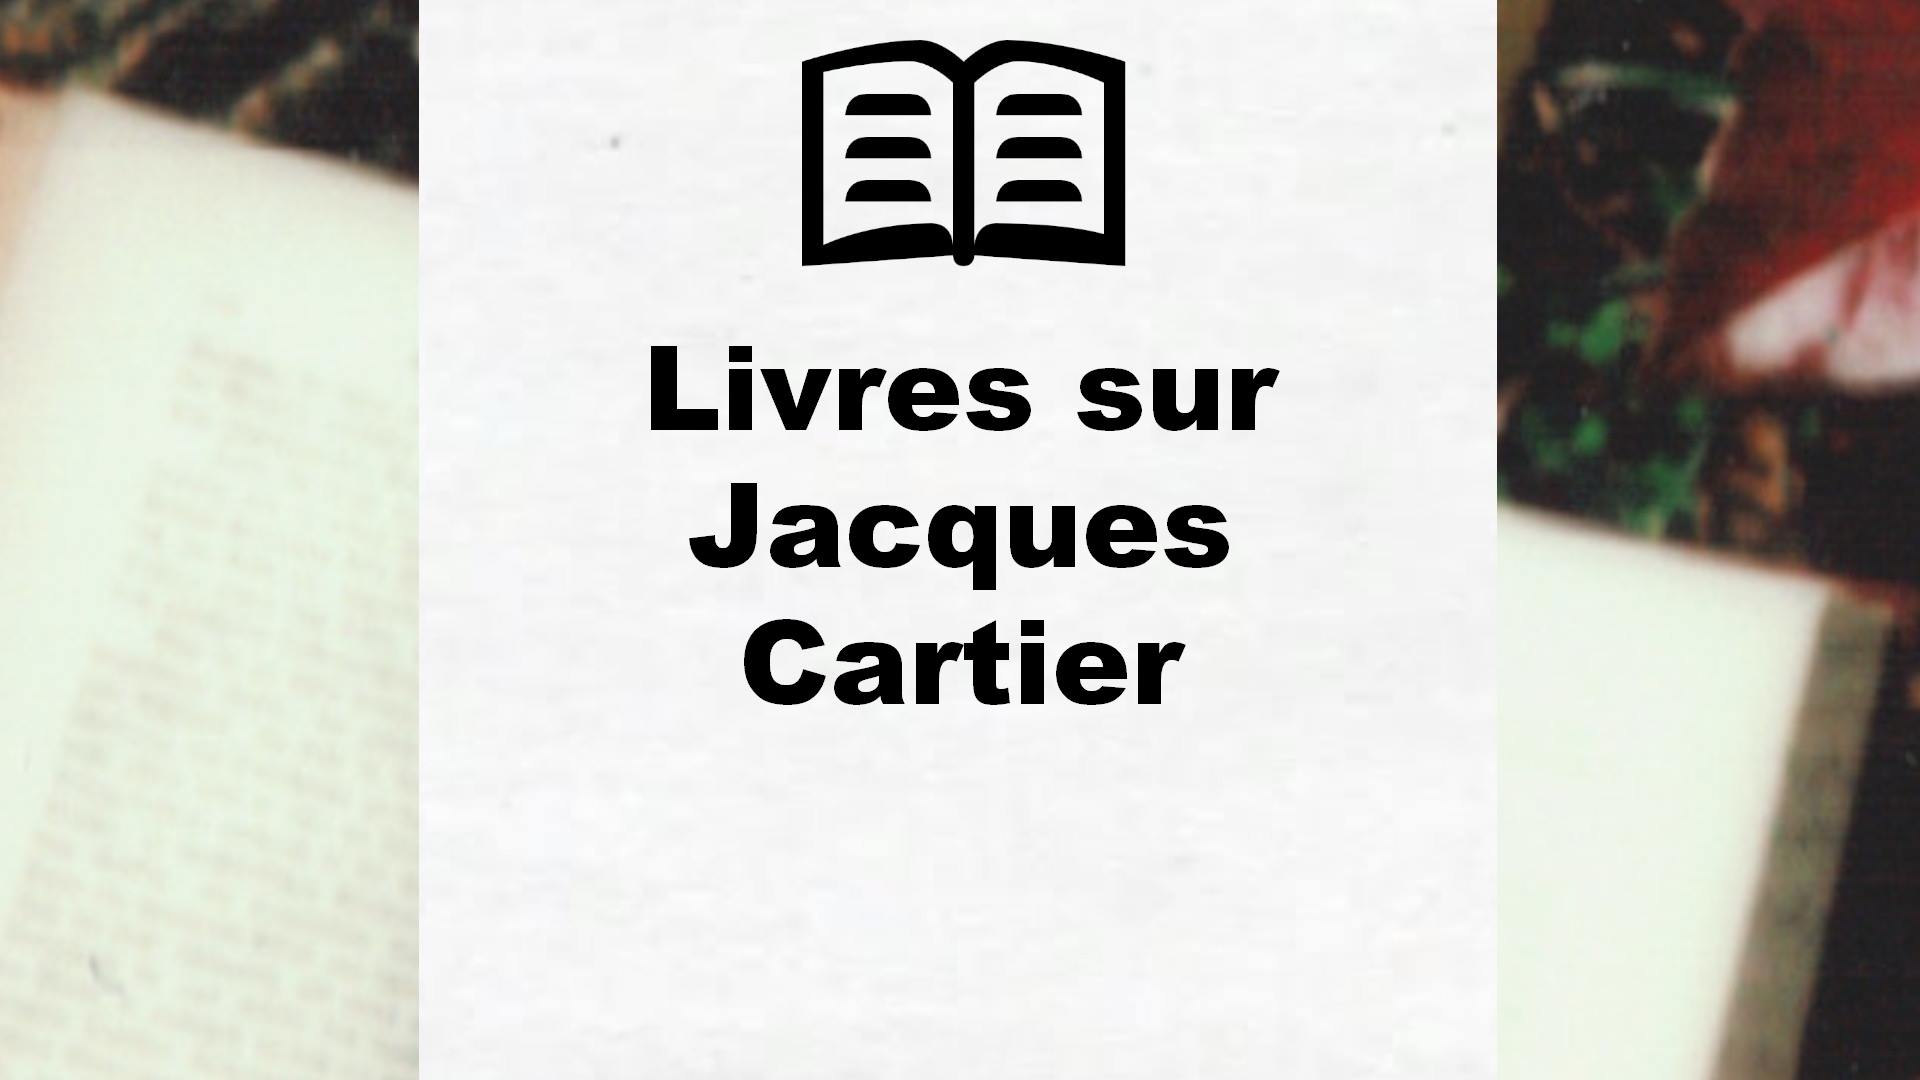 Livres sur Jacques Cartier